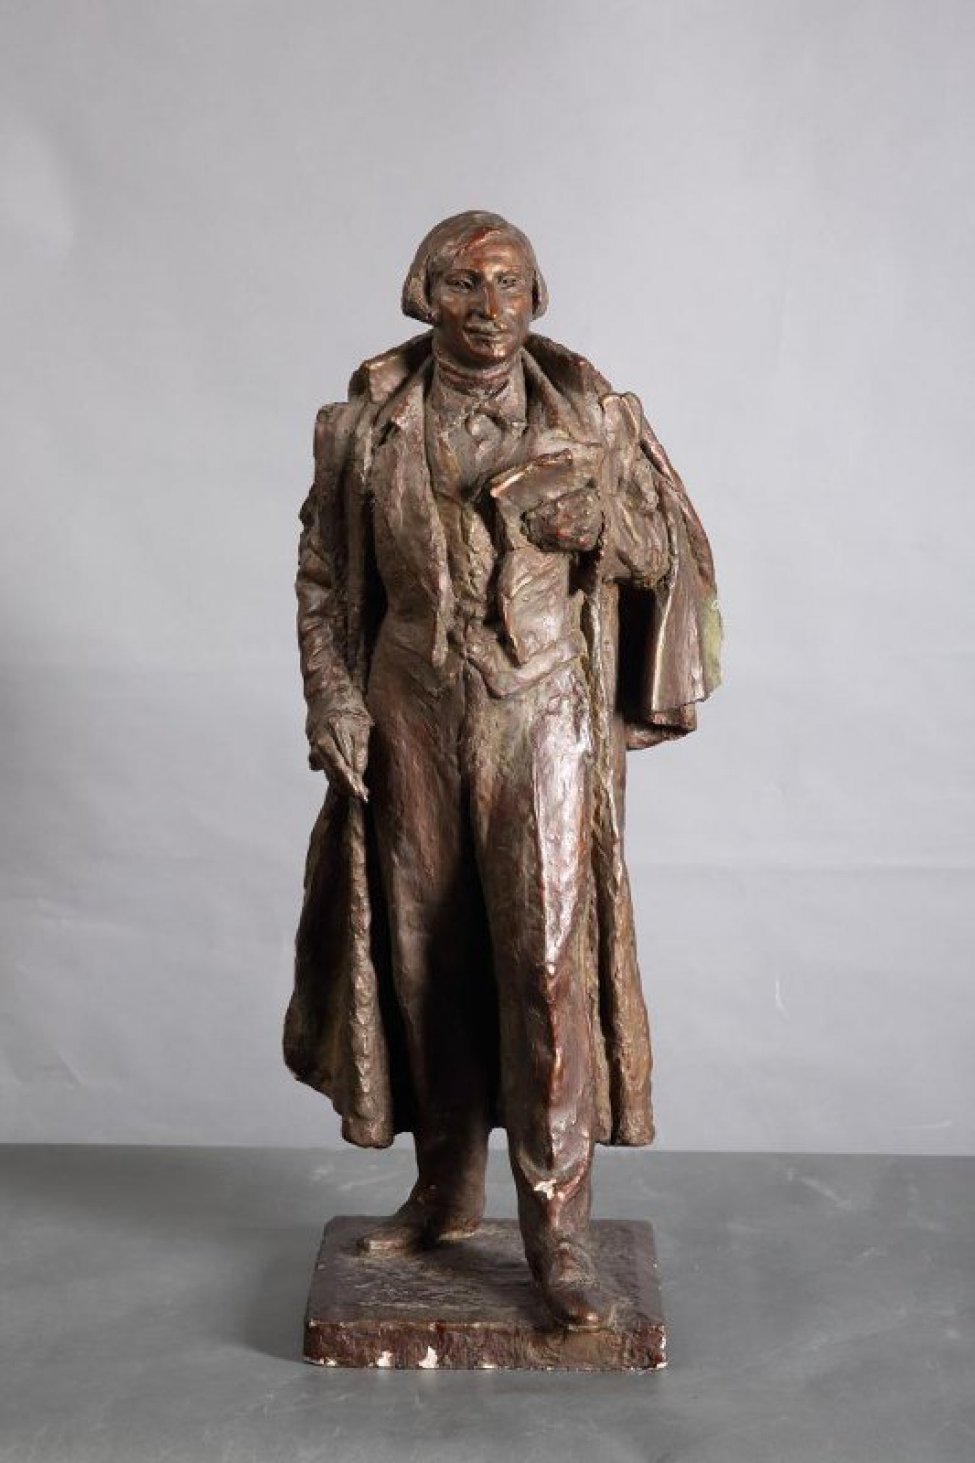 Гоголь изображен в рост, в накинутой на плечи верхней одежде, без головного убора. В левой руке у груди - раскрытая книга, в правой, опущенной вниз - карандаш. На постаменте.
Обрамление: Постамент квадратной формы.